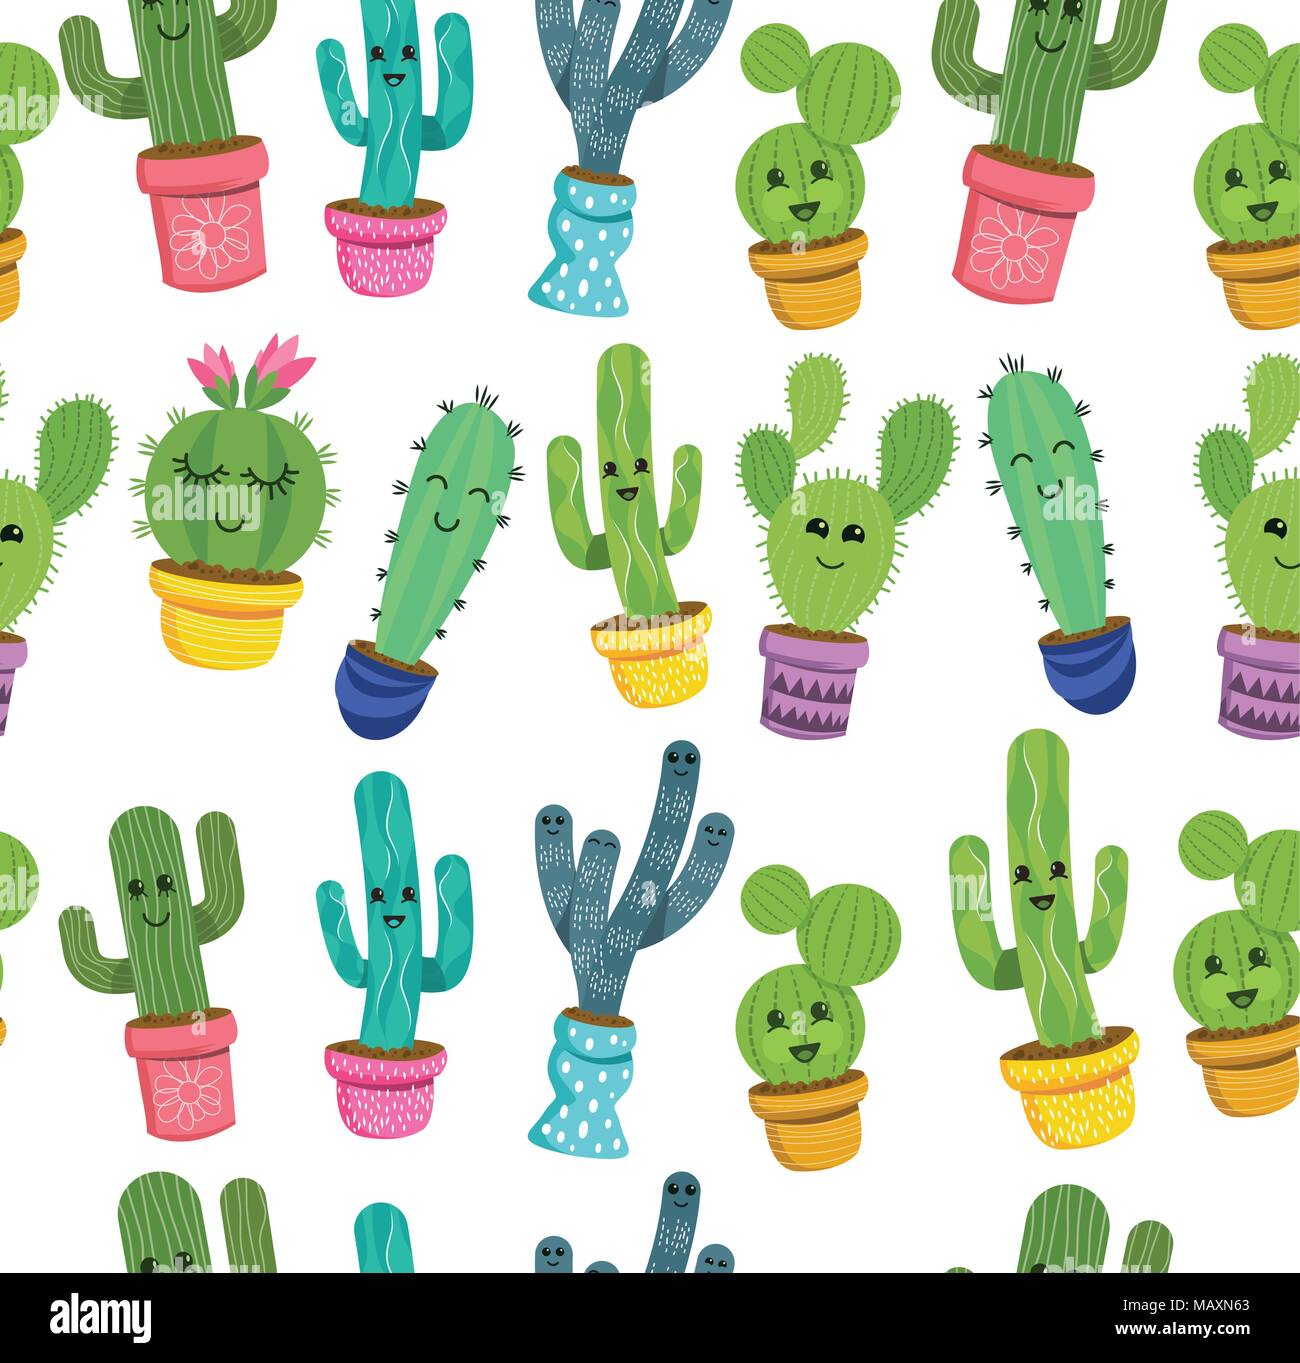 Un modello senza giunture di graziosi cactus caratteri vegetali con volti sorridenti in vasi colorati. Illustrazione Vettoriale. Illustrazione Vettoriale